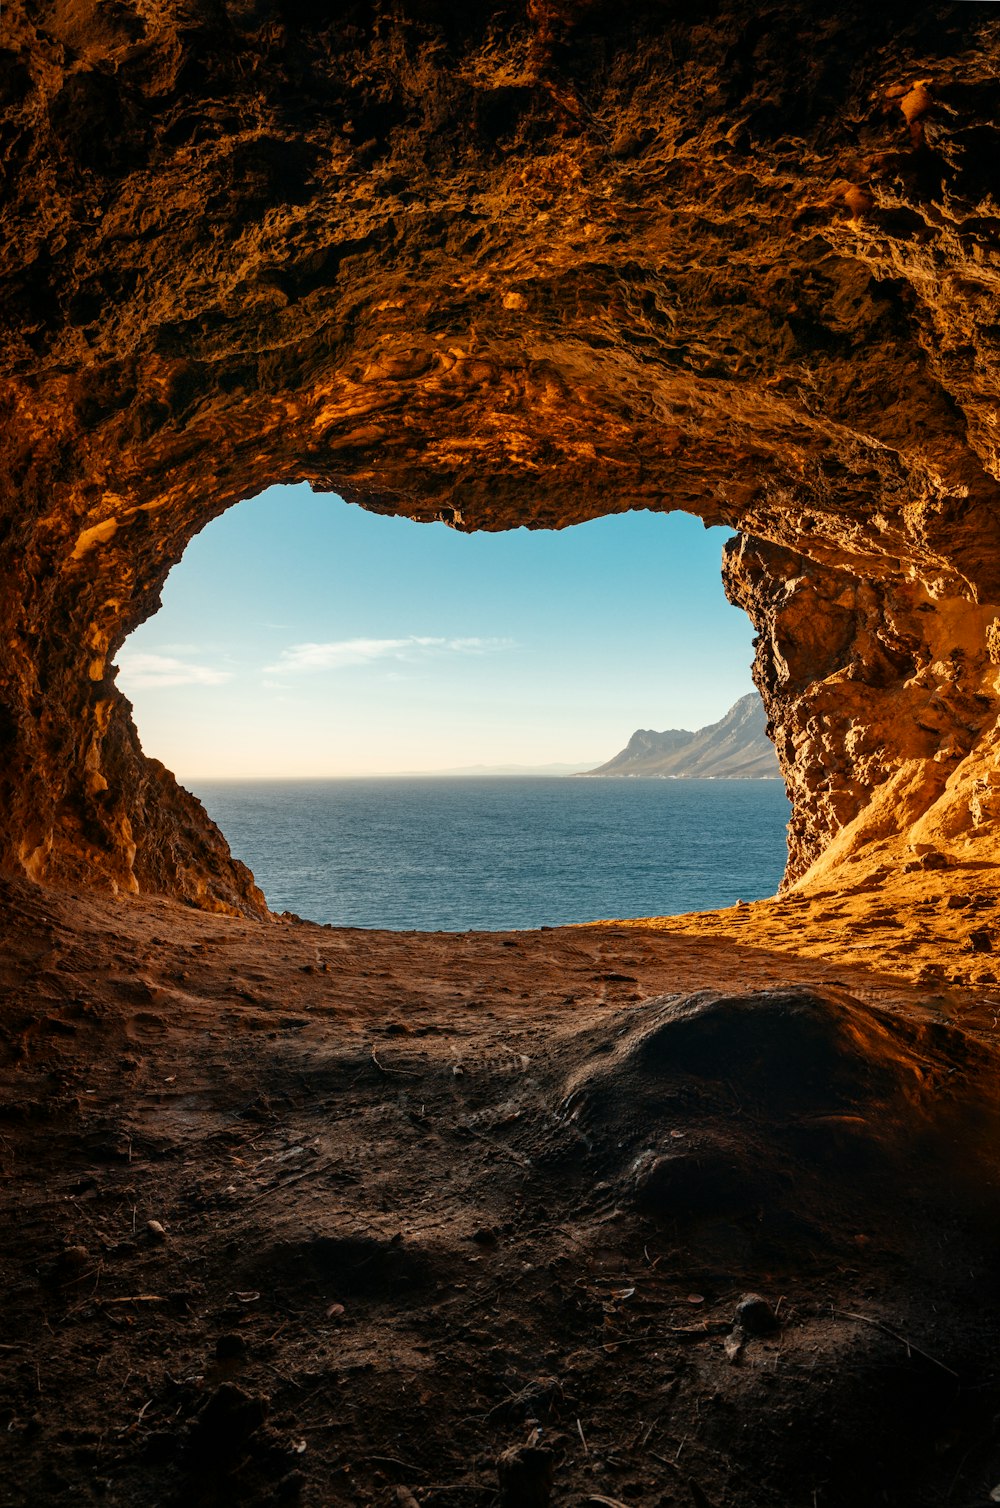 grotte brune près du plan d’eau pendant la journée